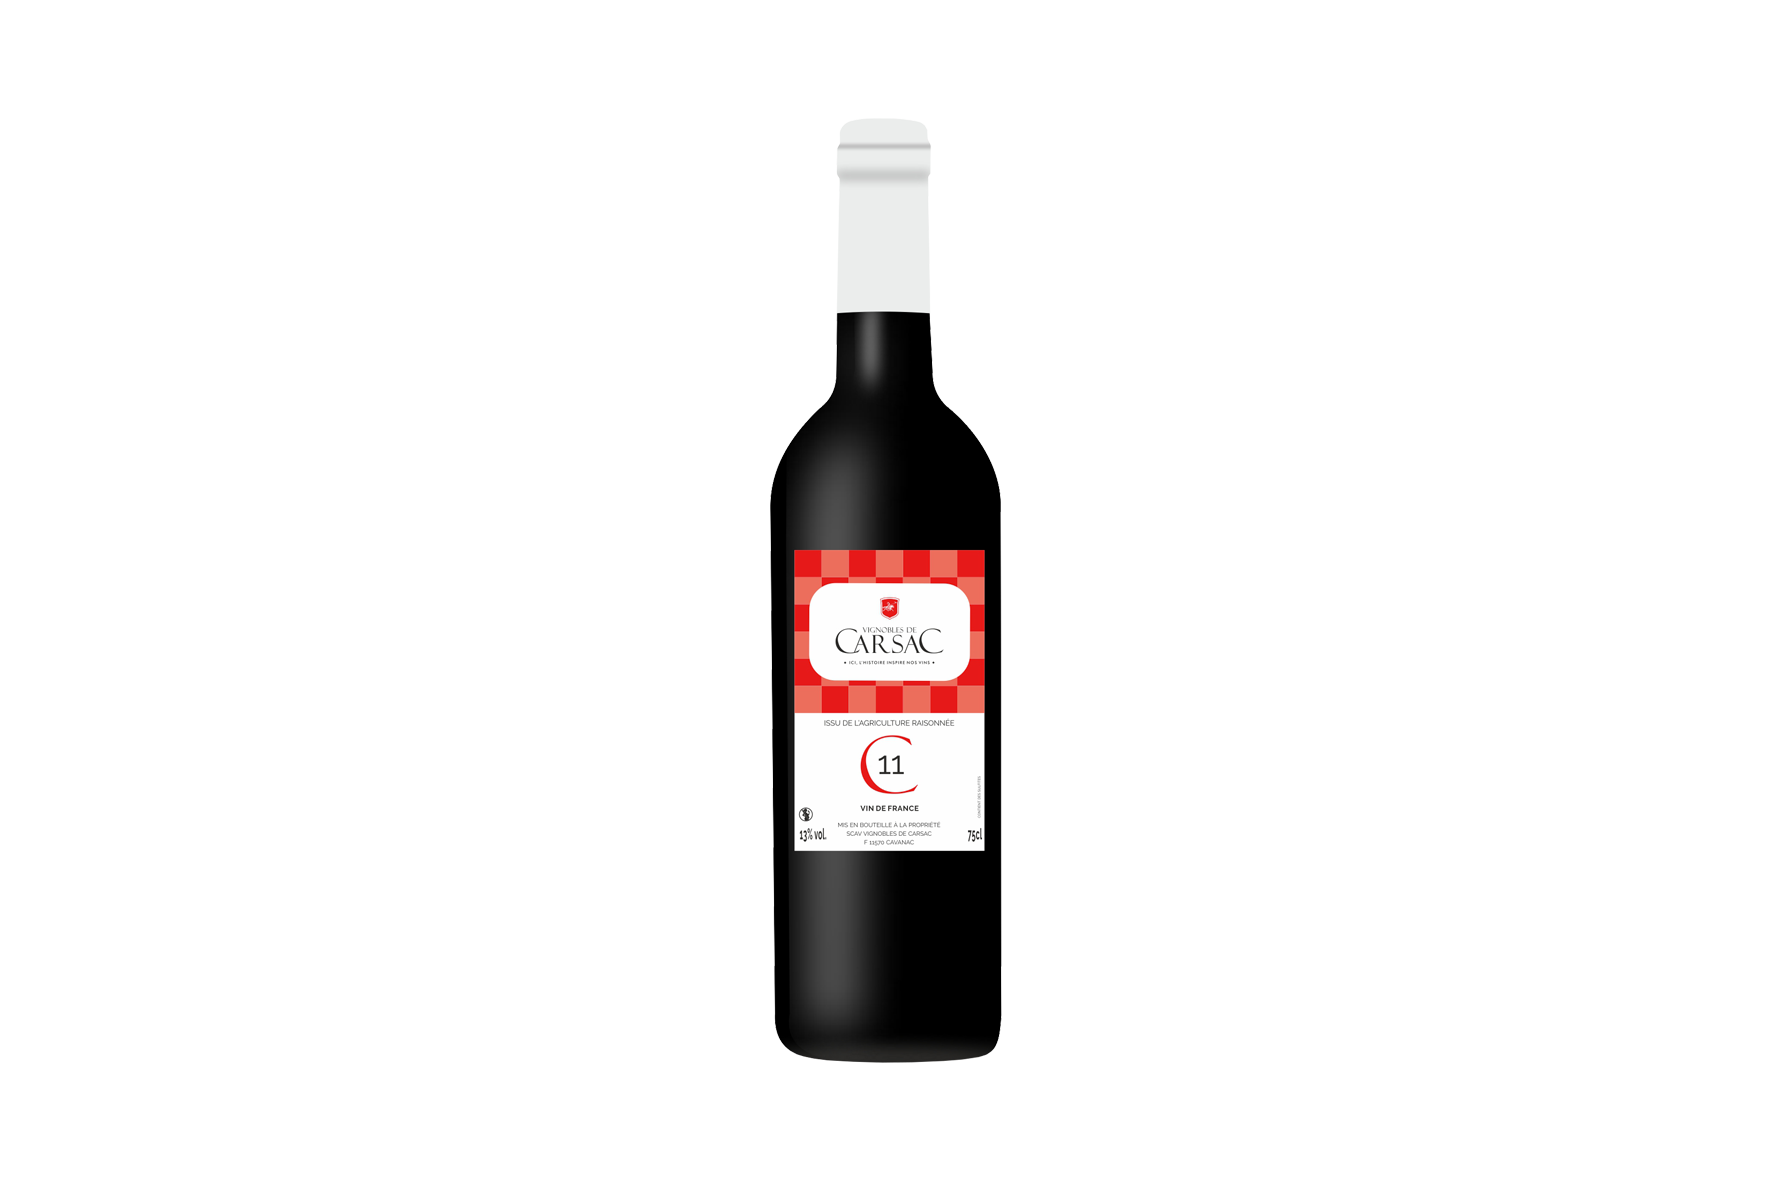 Vin rouge C11 vignobles de carsac